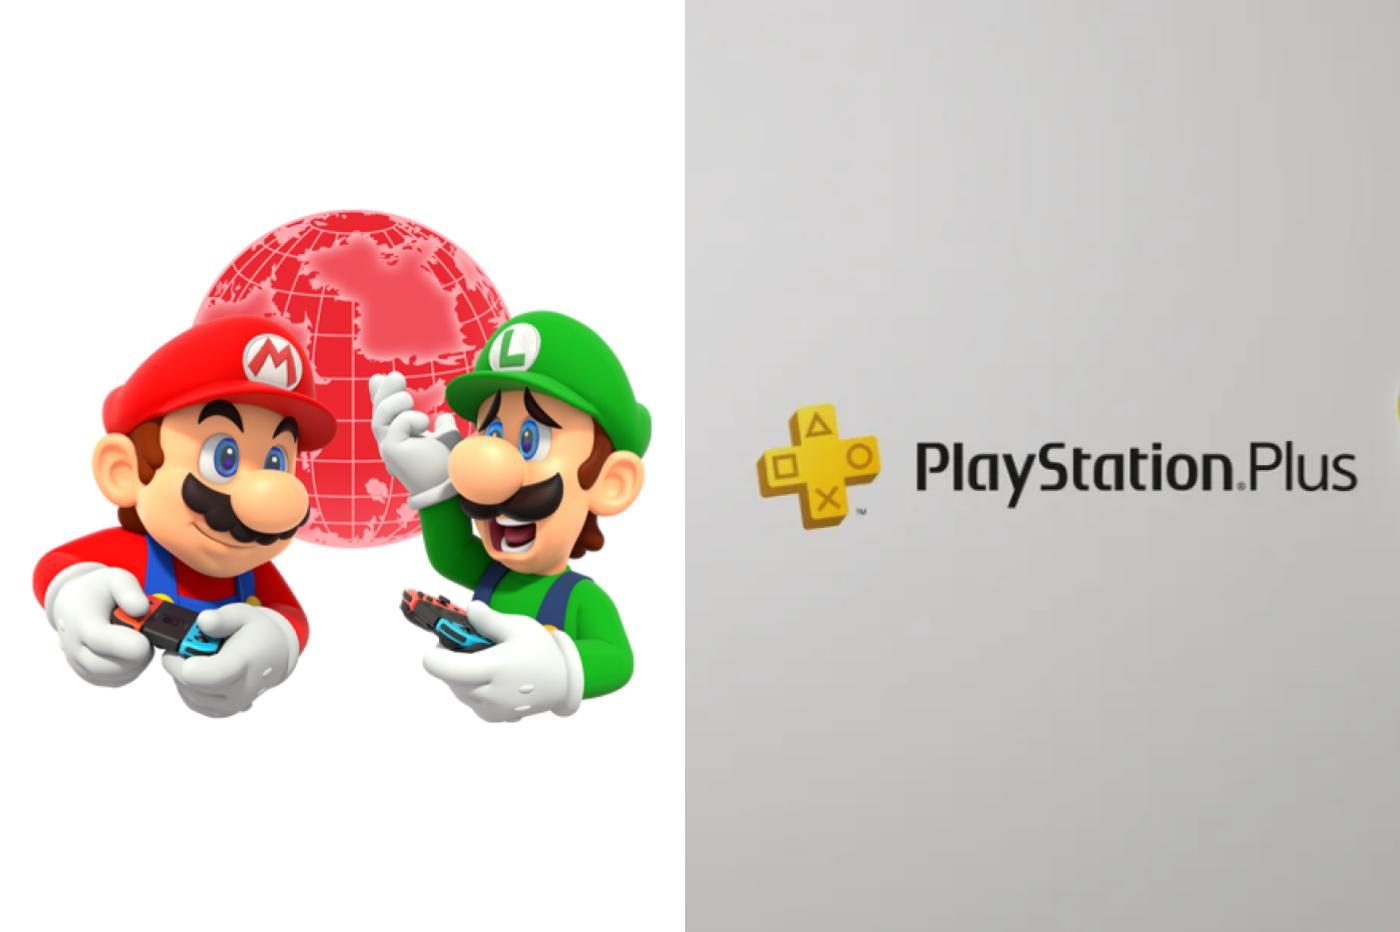 Logo du Switch Online avec Mario et Luigi et logo du Playstation Plus